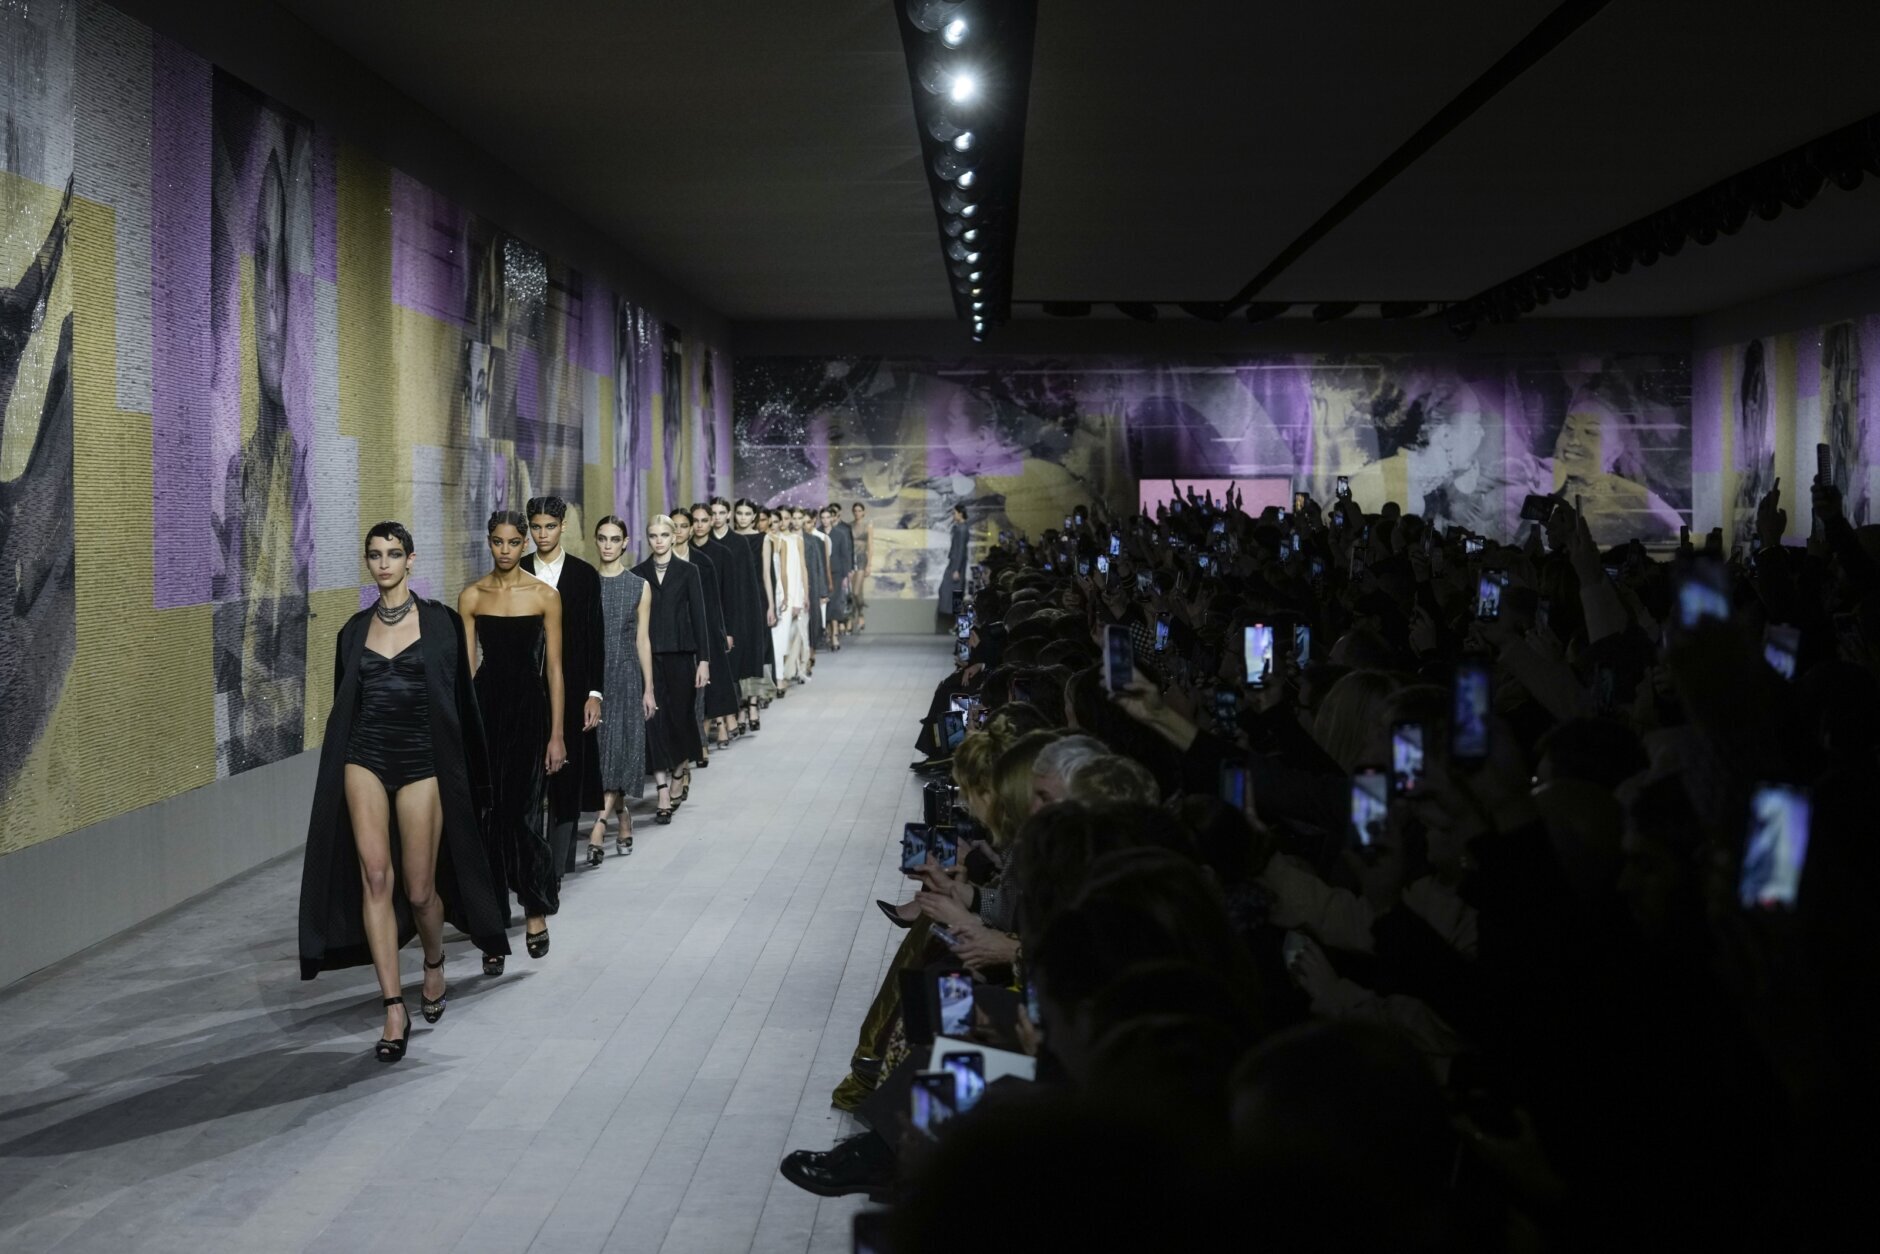 Christian Dior Spring/Summer 2023 Paris Fashion Week